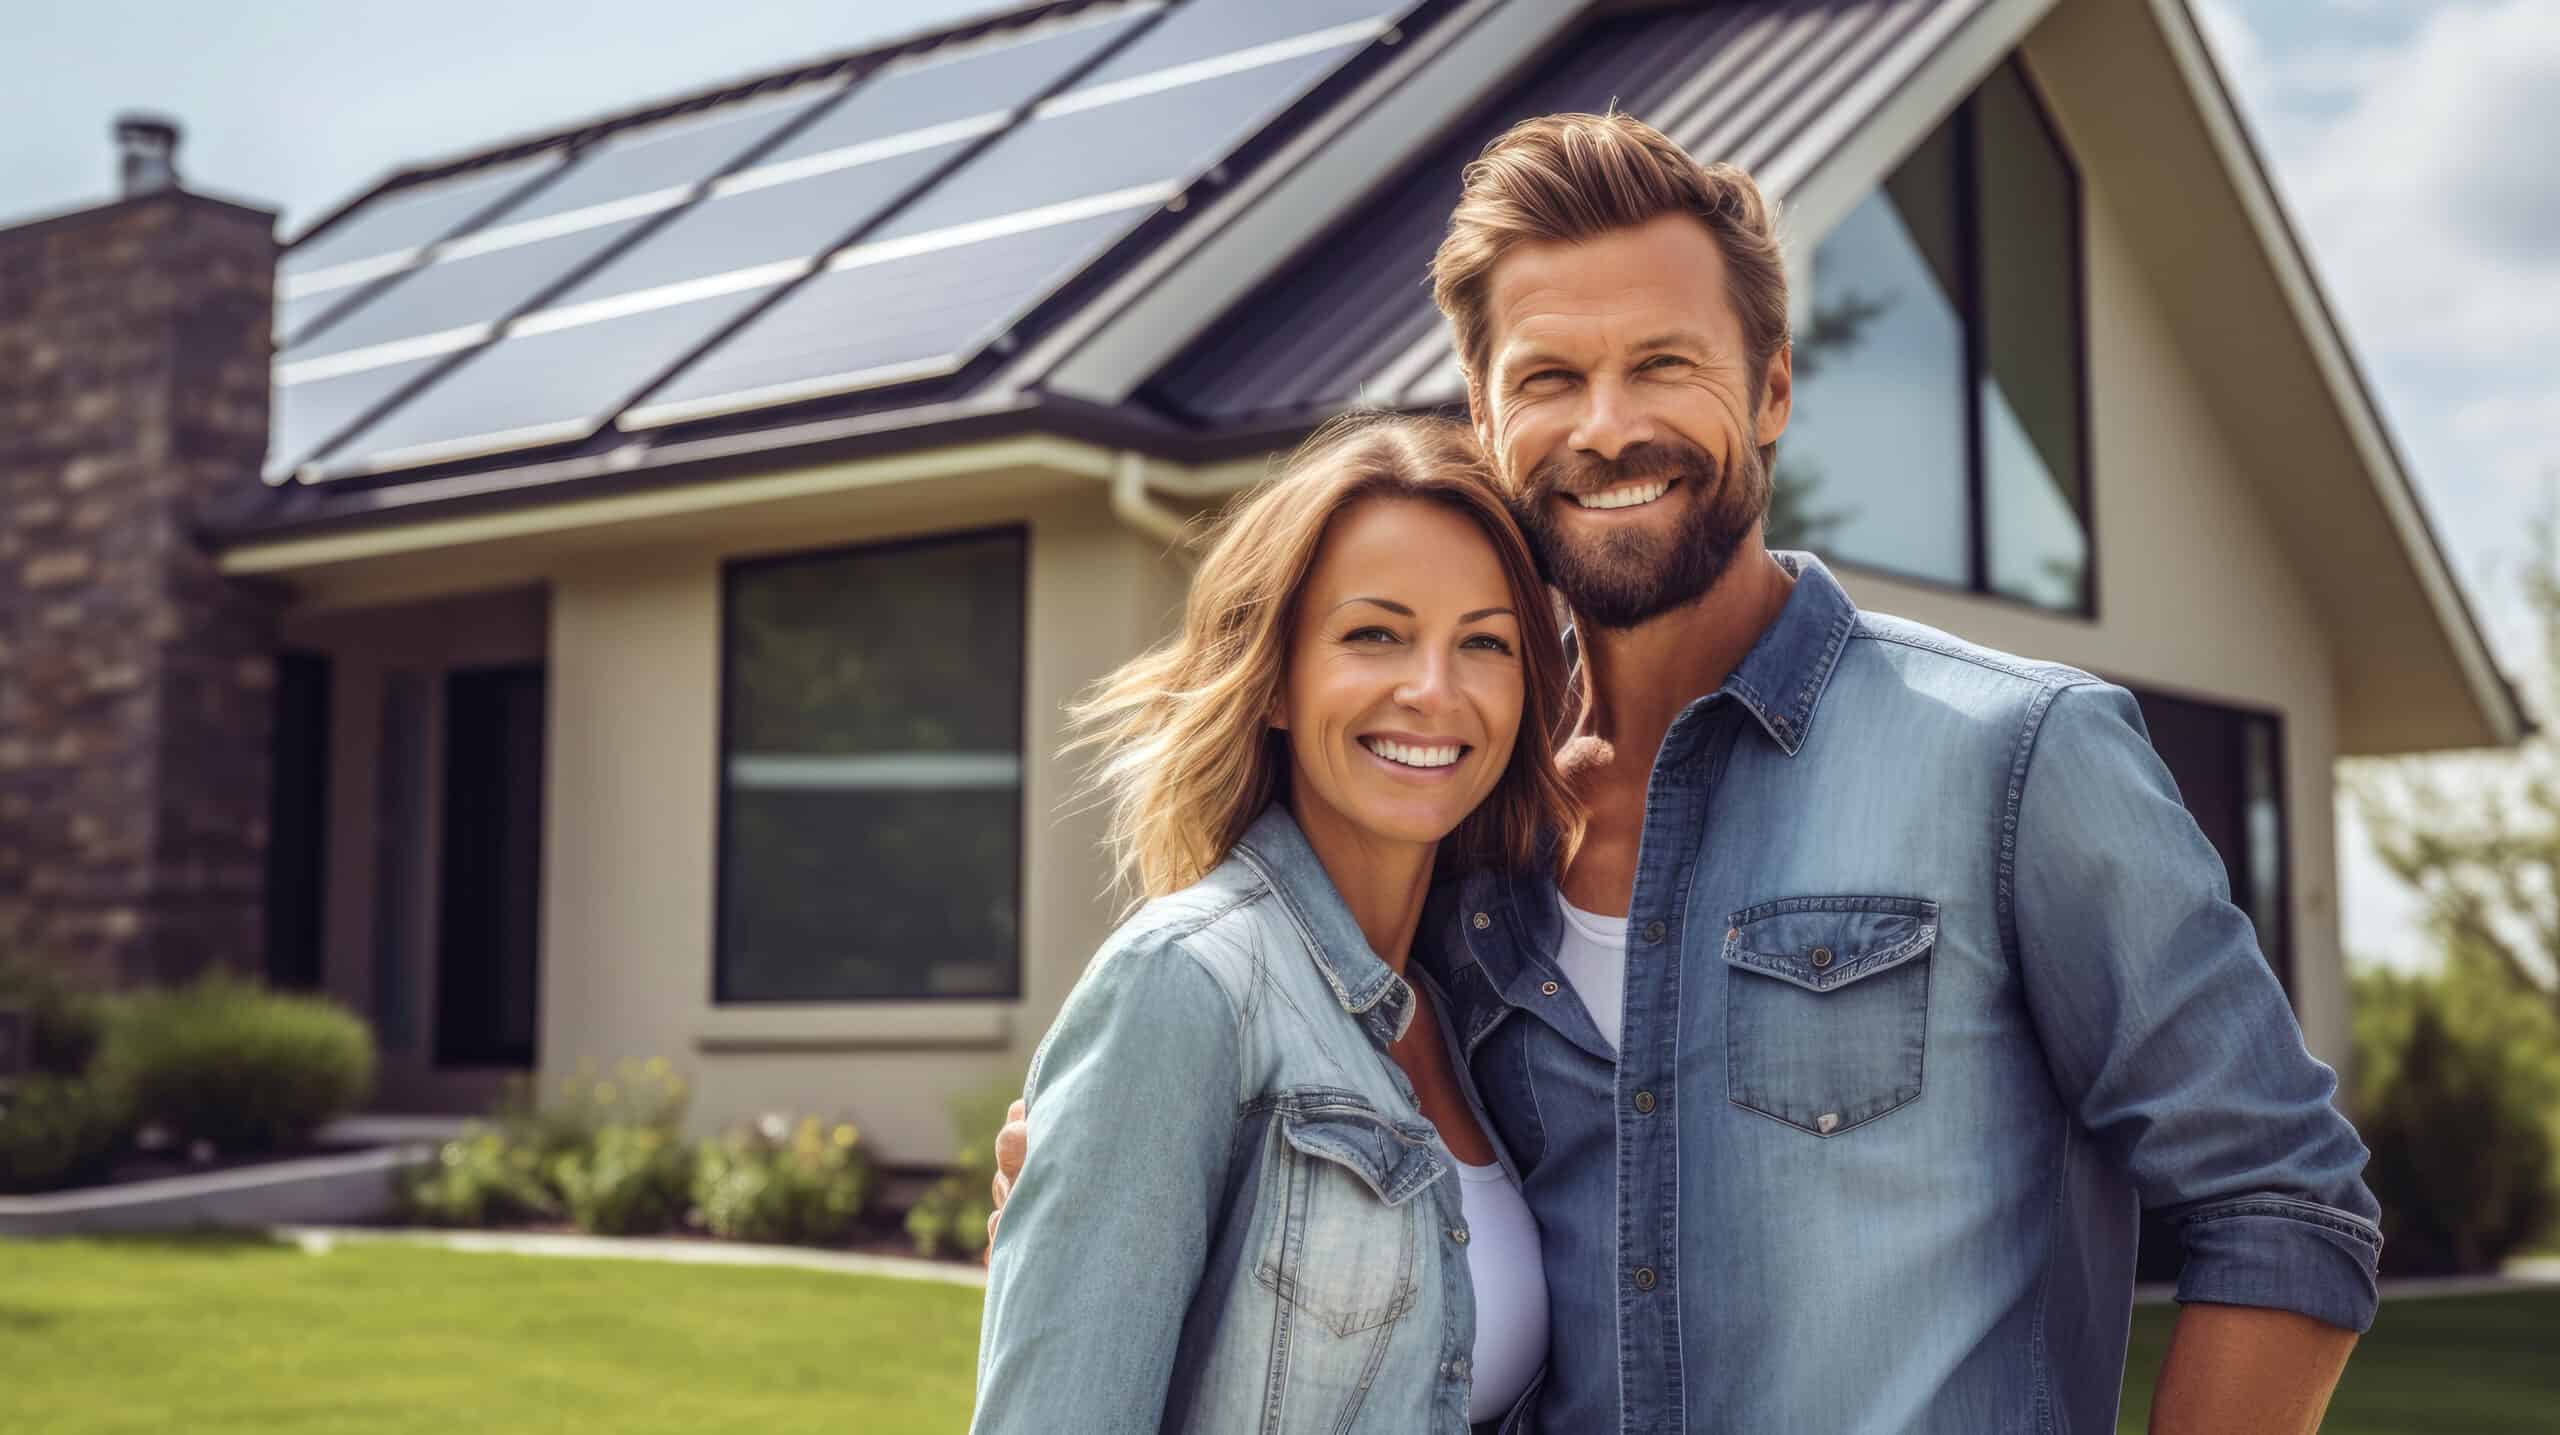 couple enjoying the benefits of solar panels